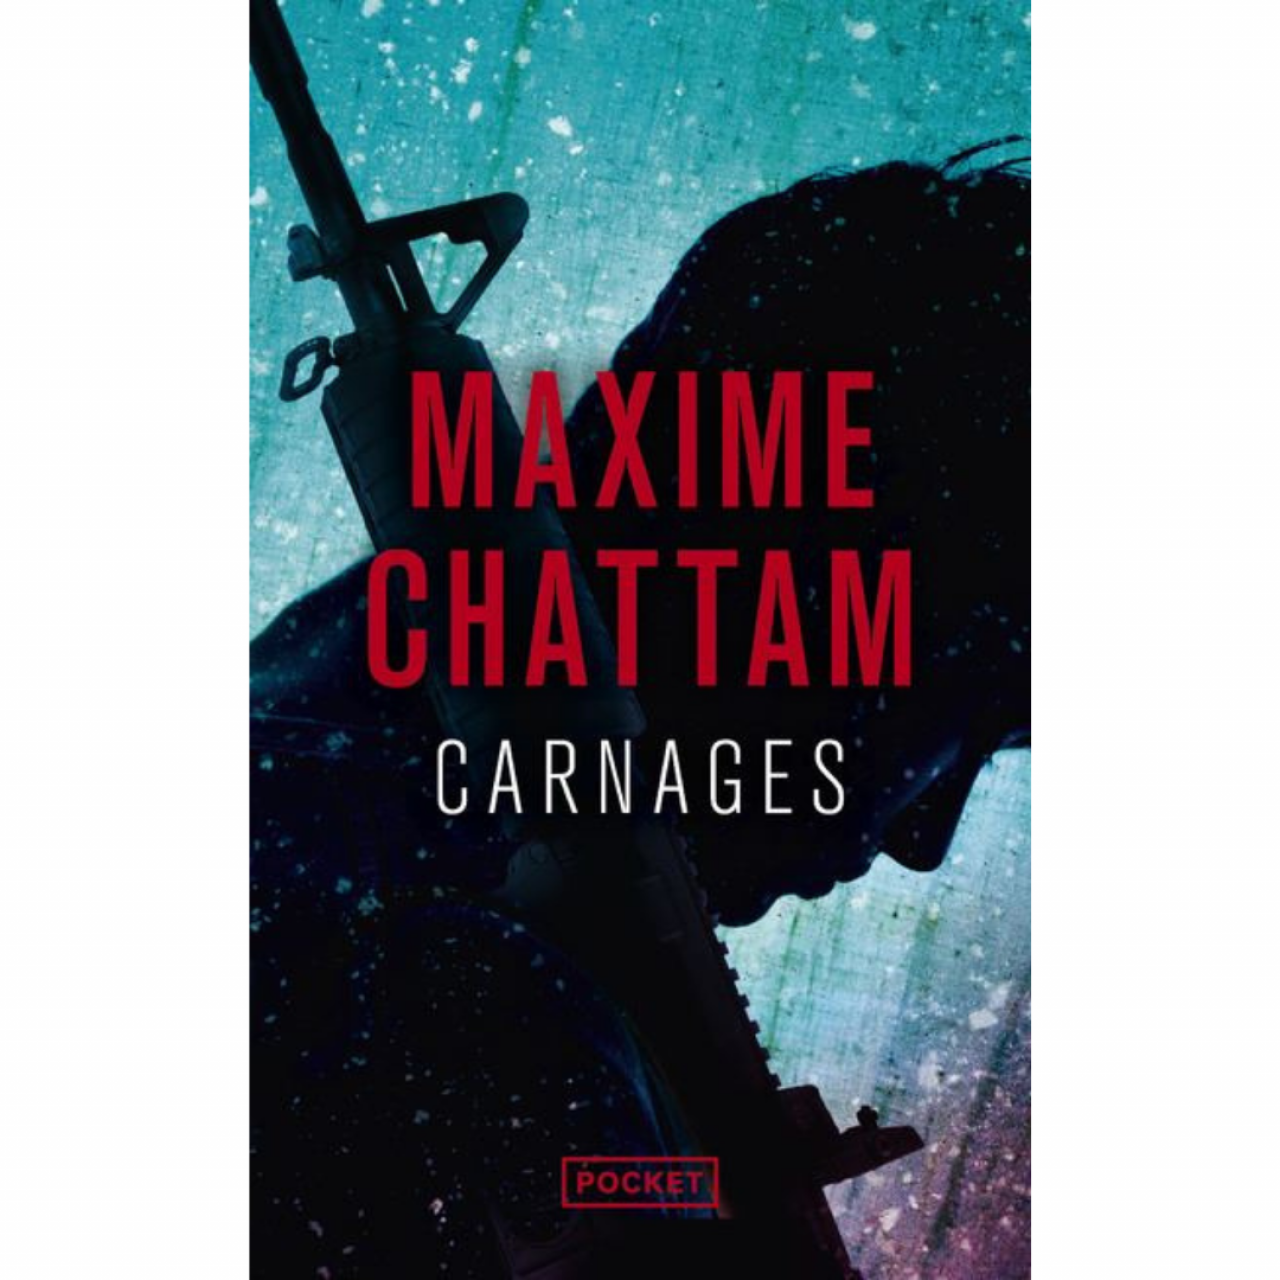 Carnages de Maxime Chattam, 4,50€ (Éditions Pocket)